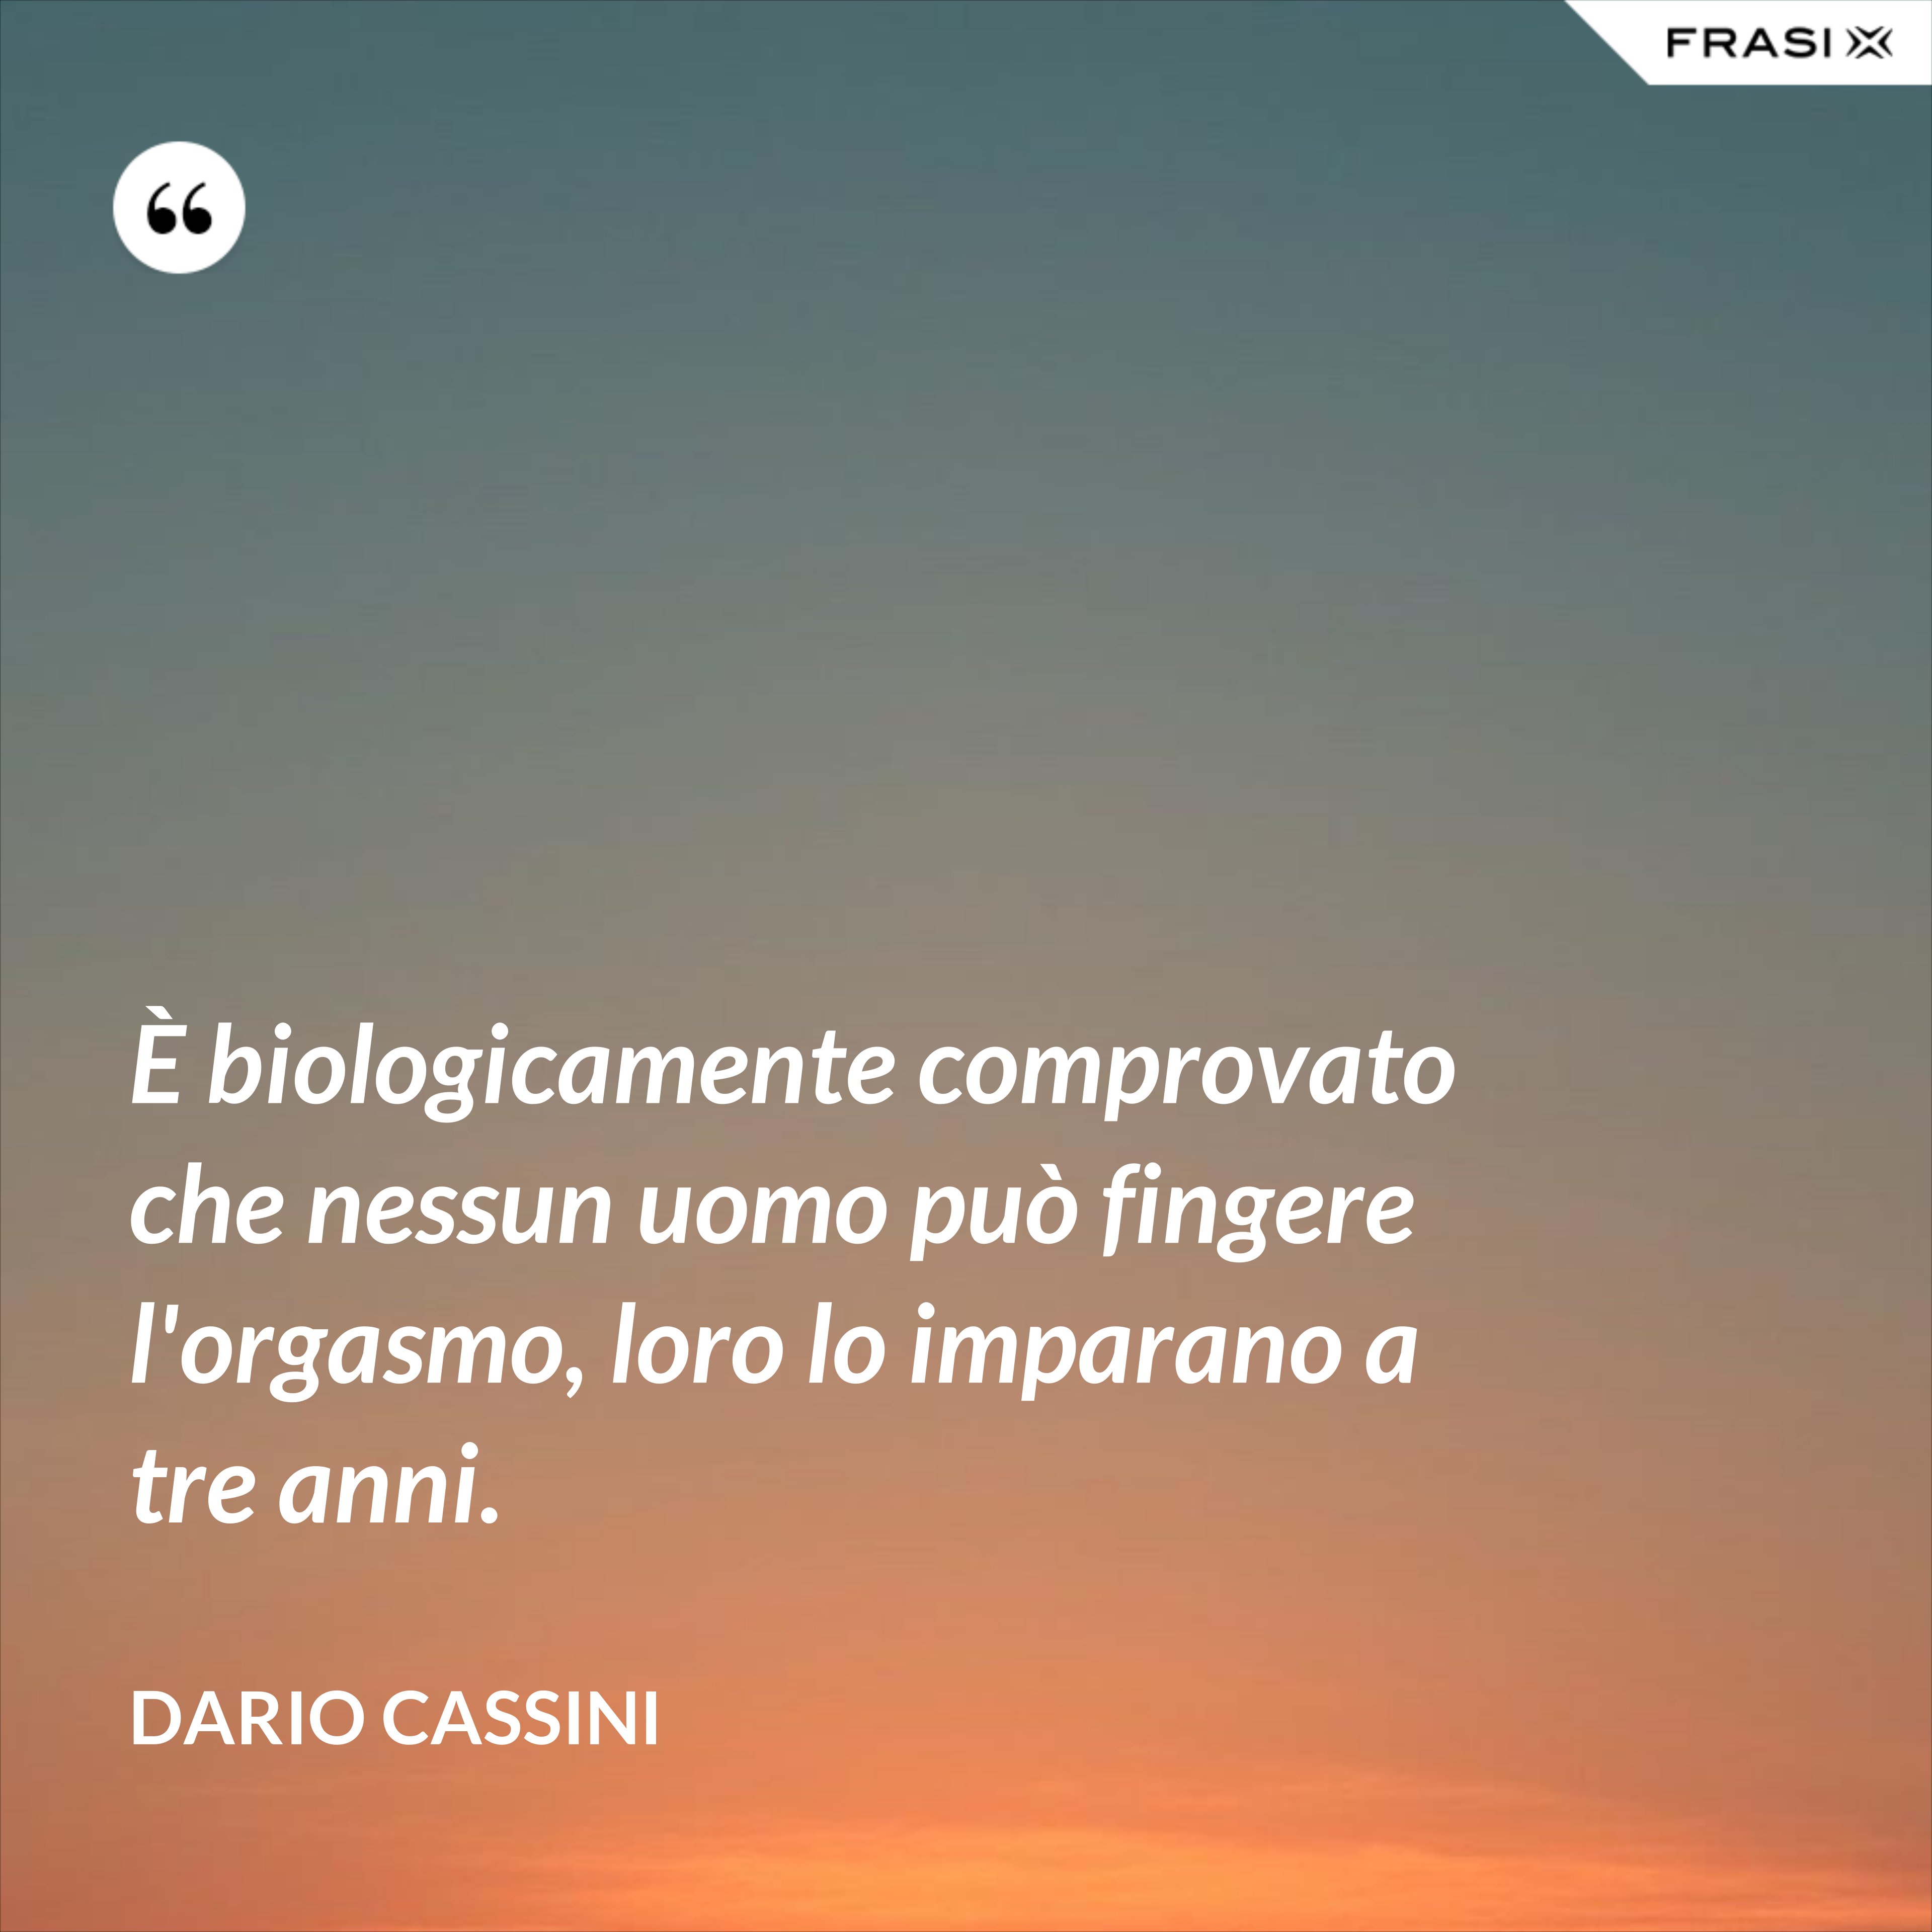 È biologicamente comprovato che nessun uomo può fingere l'orgasmo, loro lo imparano a tre anni. - Dario Cassini